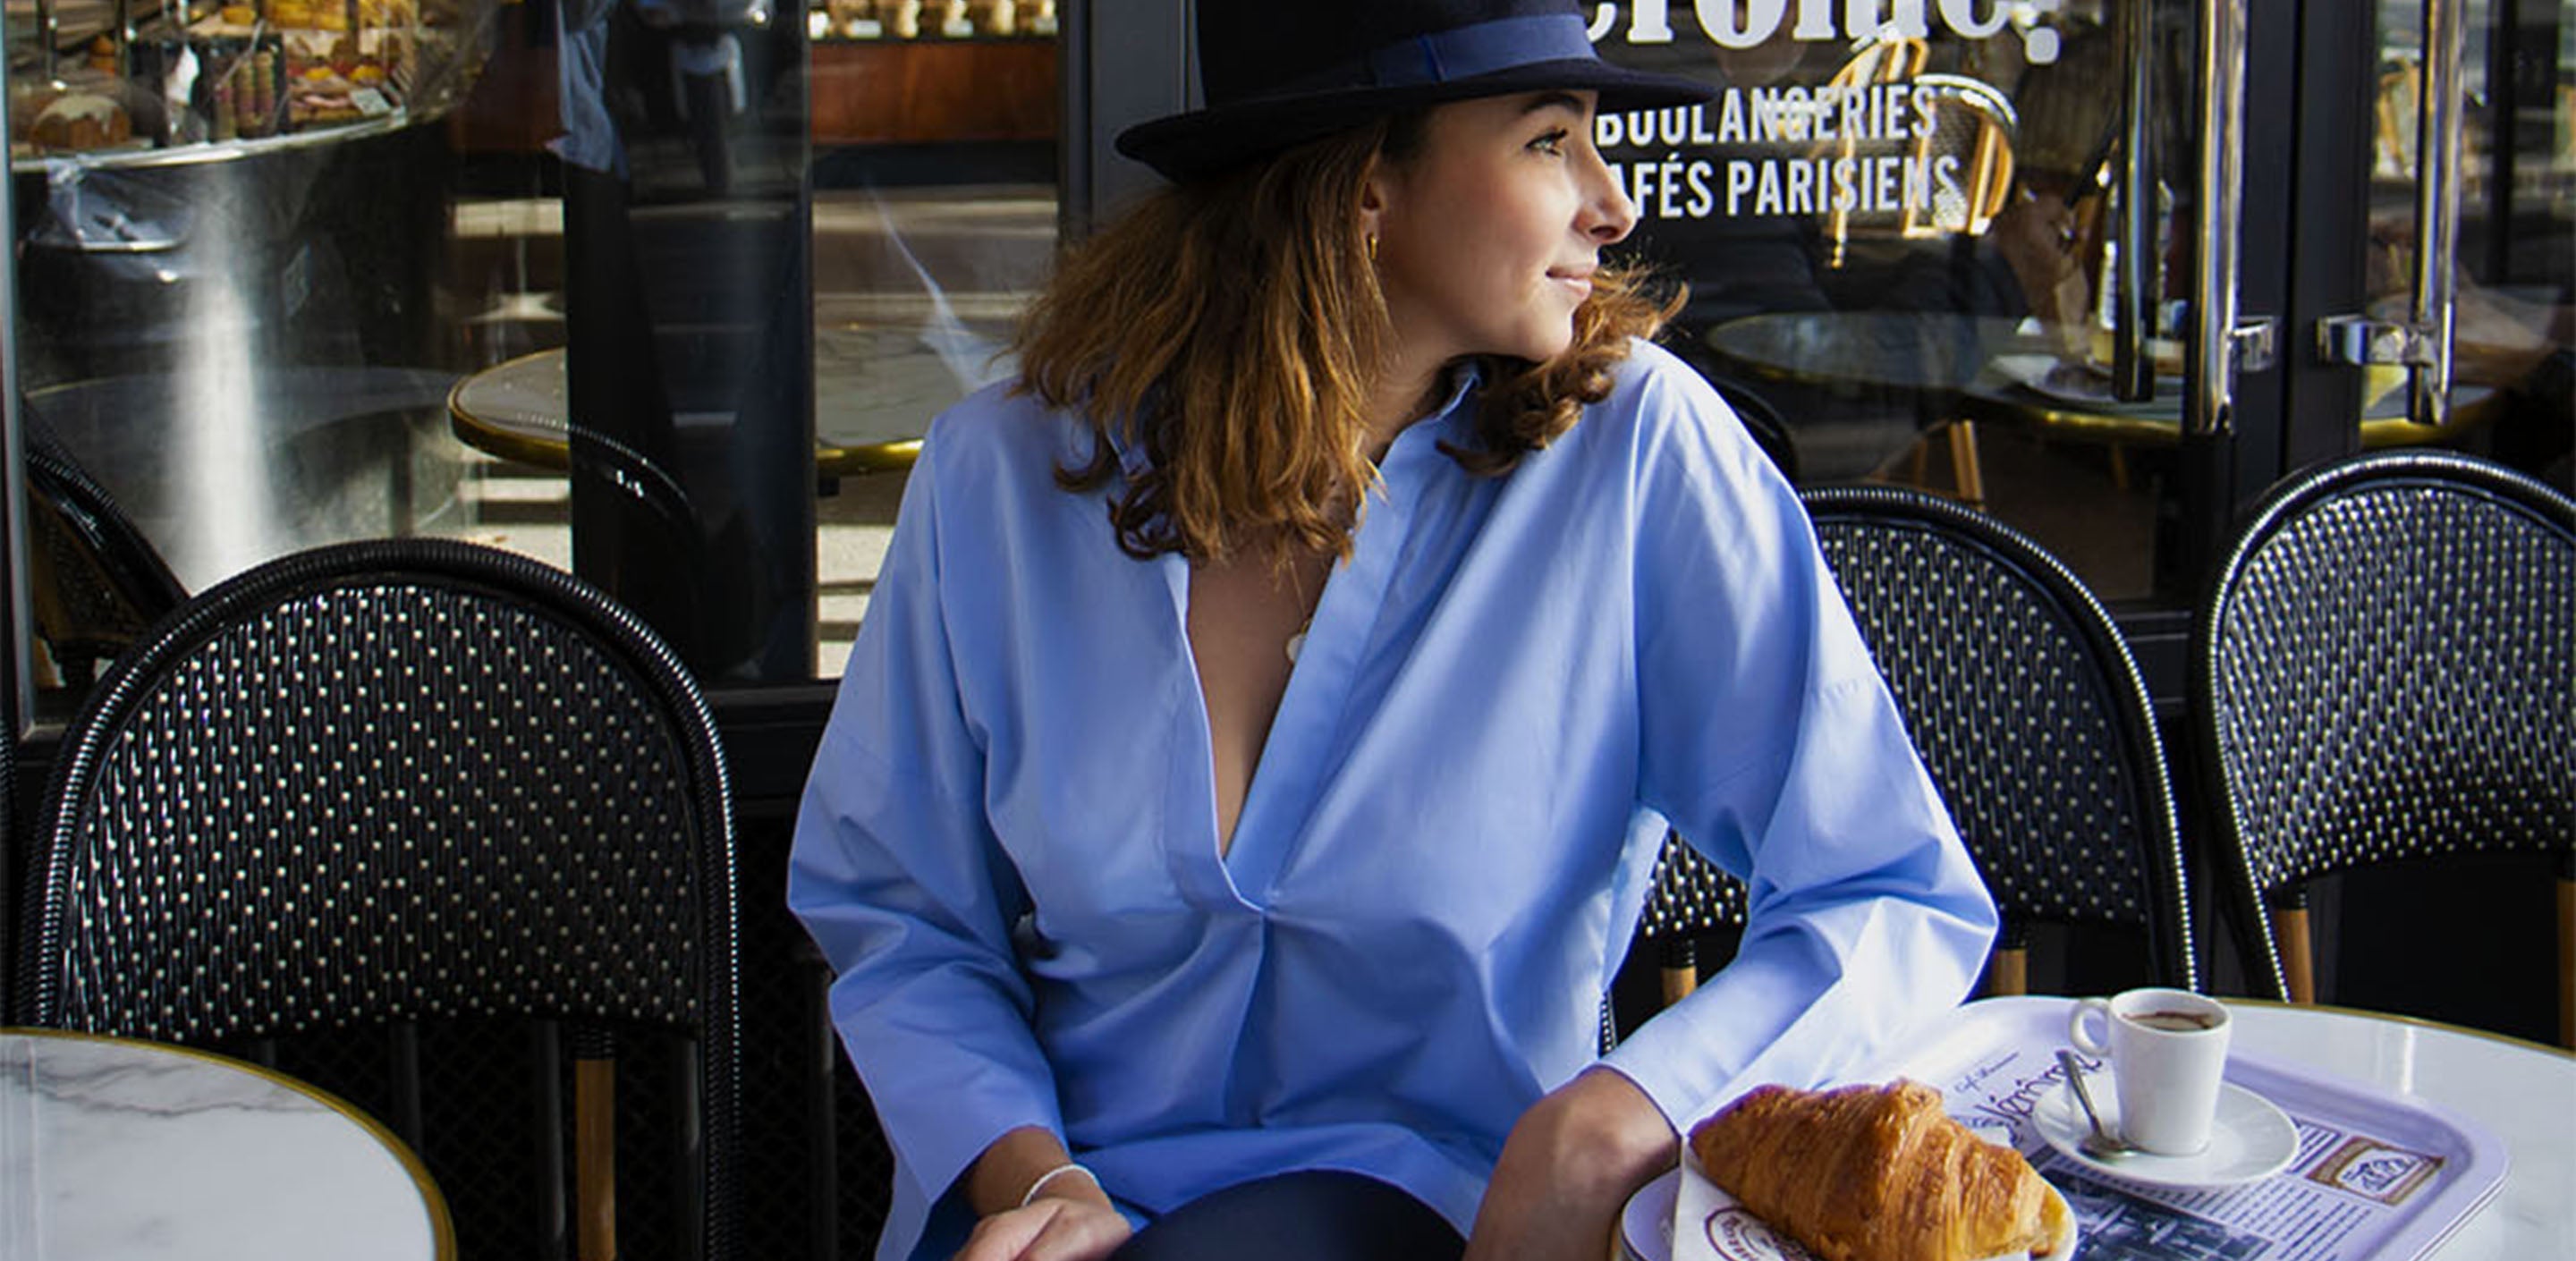 chemise anahide saint andre porter a la terrasse d'un cafe parisien